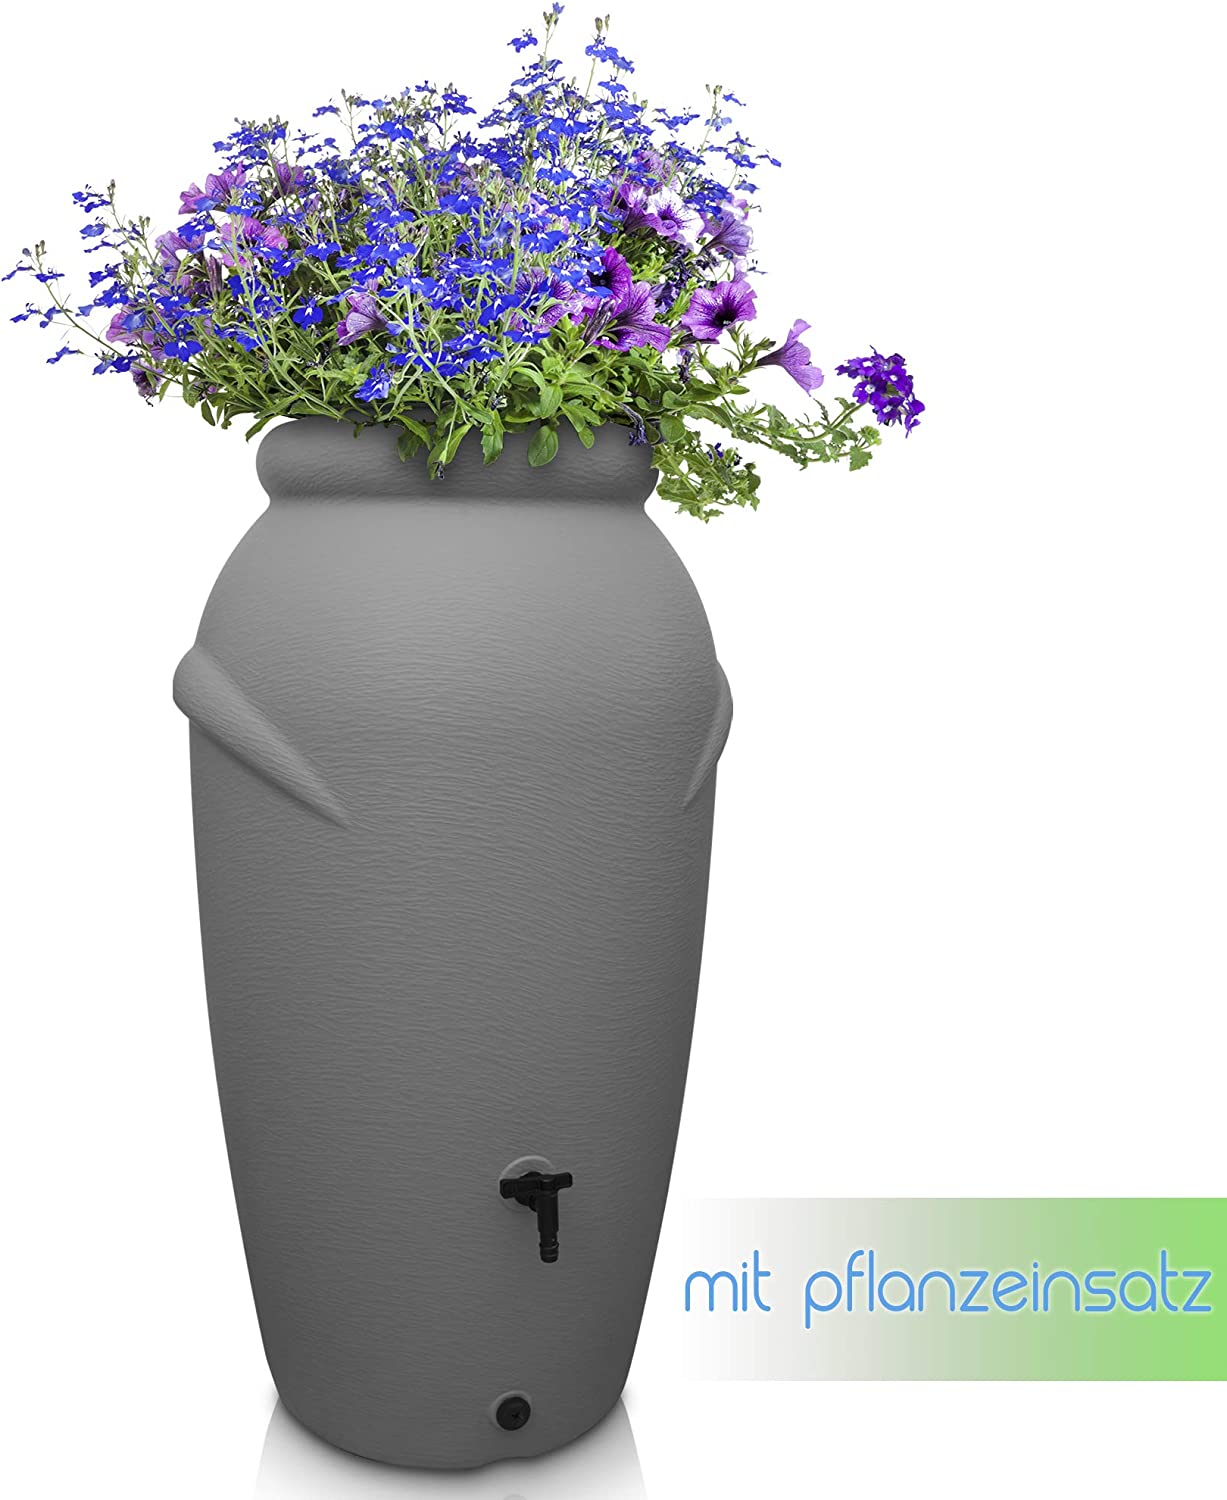 Eine graue Yourcasa-de Regentonne 210/360/440 Liter mit integriertem Pflanzeneinsatz gefüllt mit blauen und violetten Blumen.